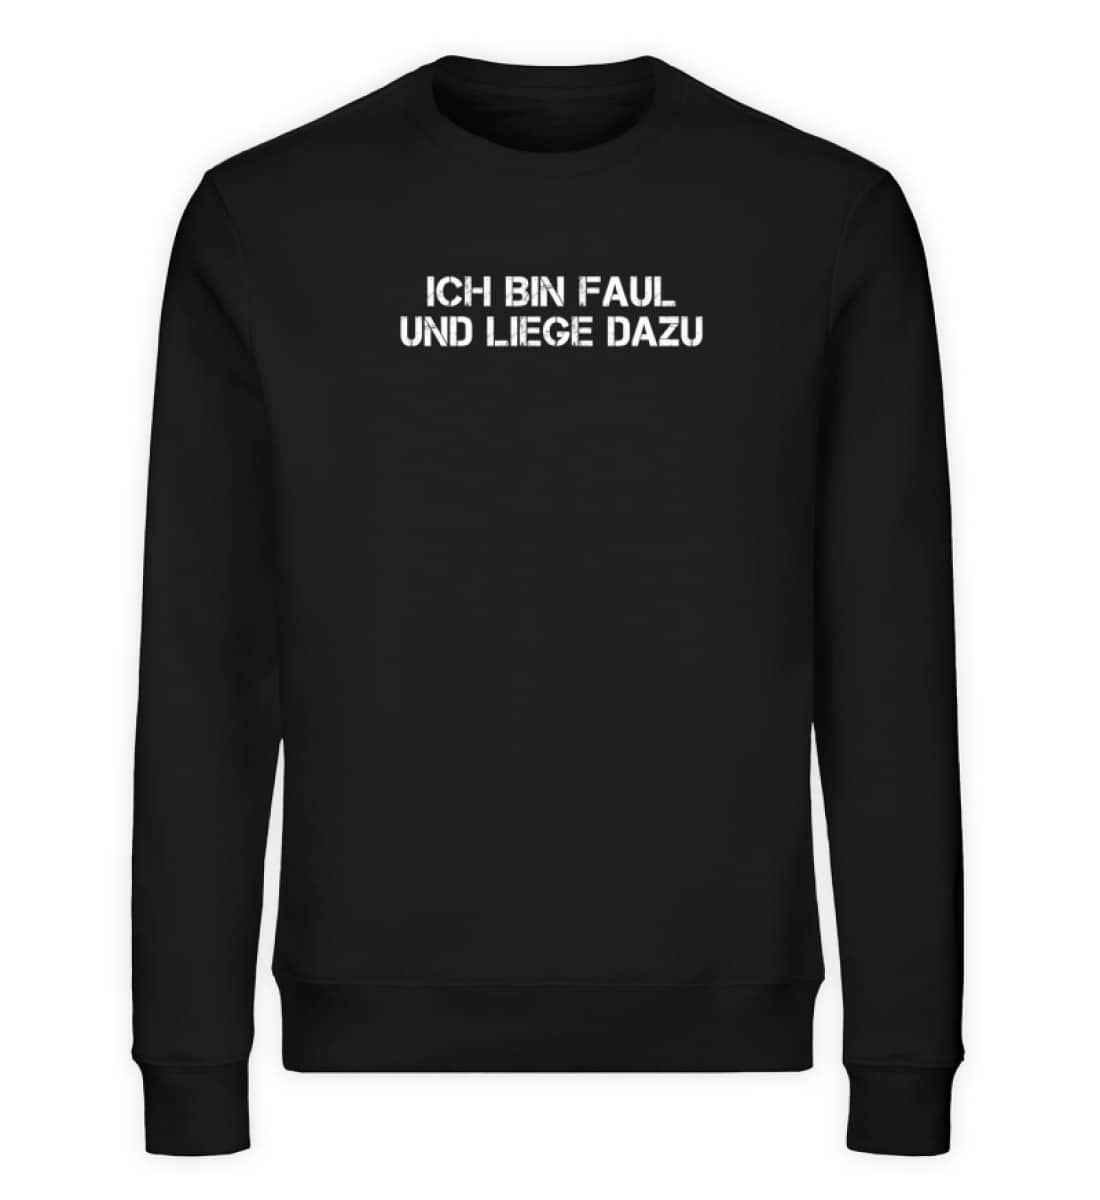 Ich bin faul und liege dazu - Unisex Organic Sweatshirt-16